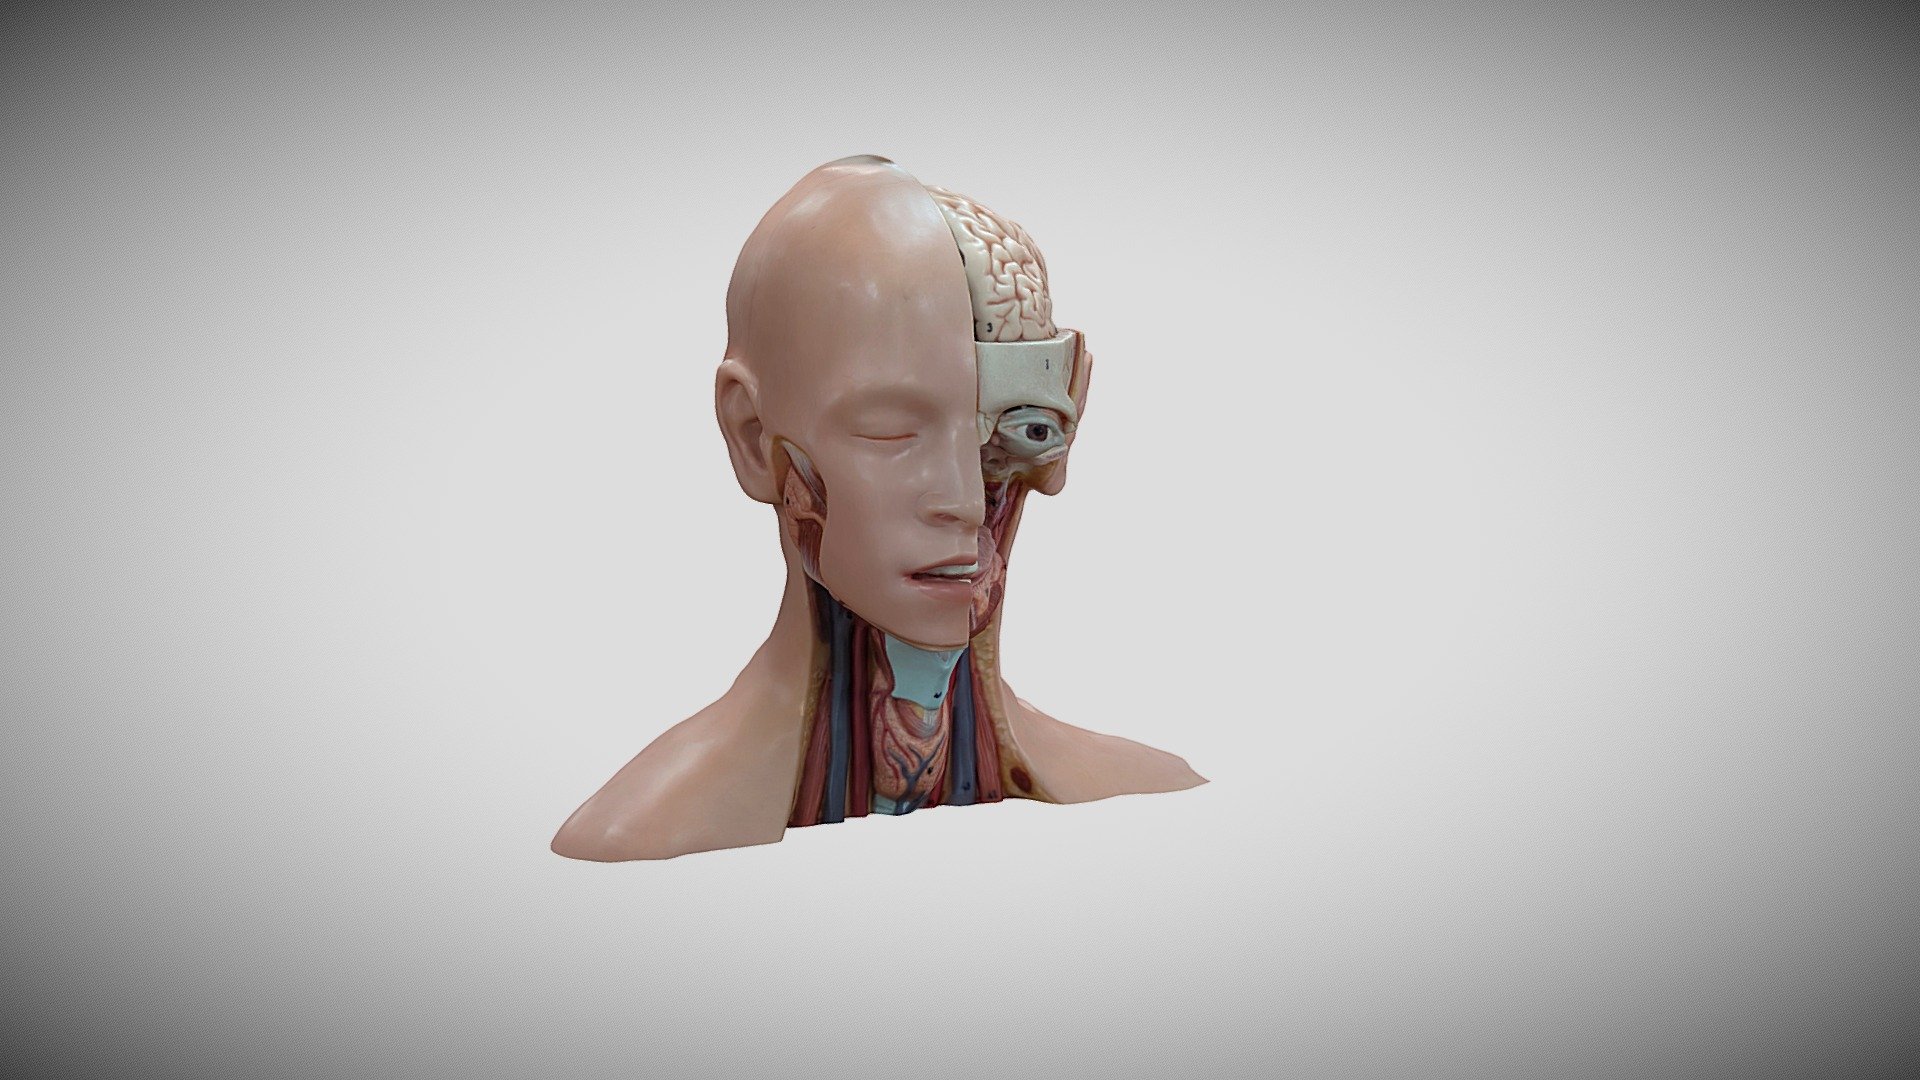 Manaquin Head - 3D model by UHL Clinical Education [fdb9382] - Sketchfab